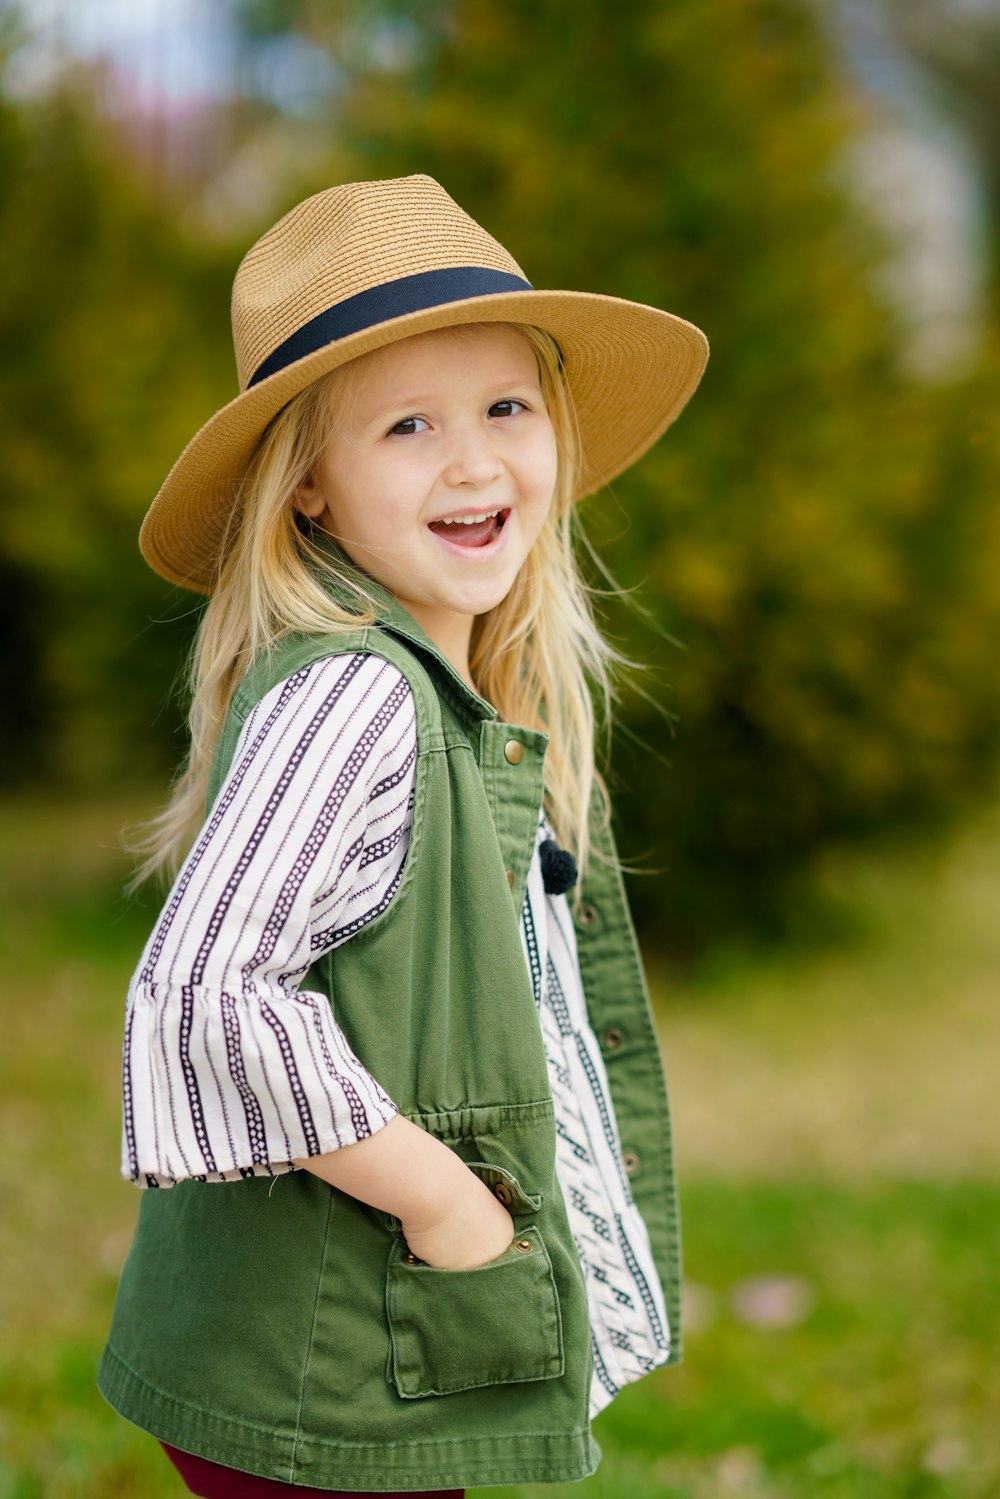 fotografia di messa a fuoco selettiva della ragazza che sorride indossando il cappello del sole